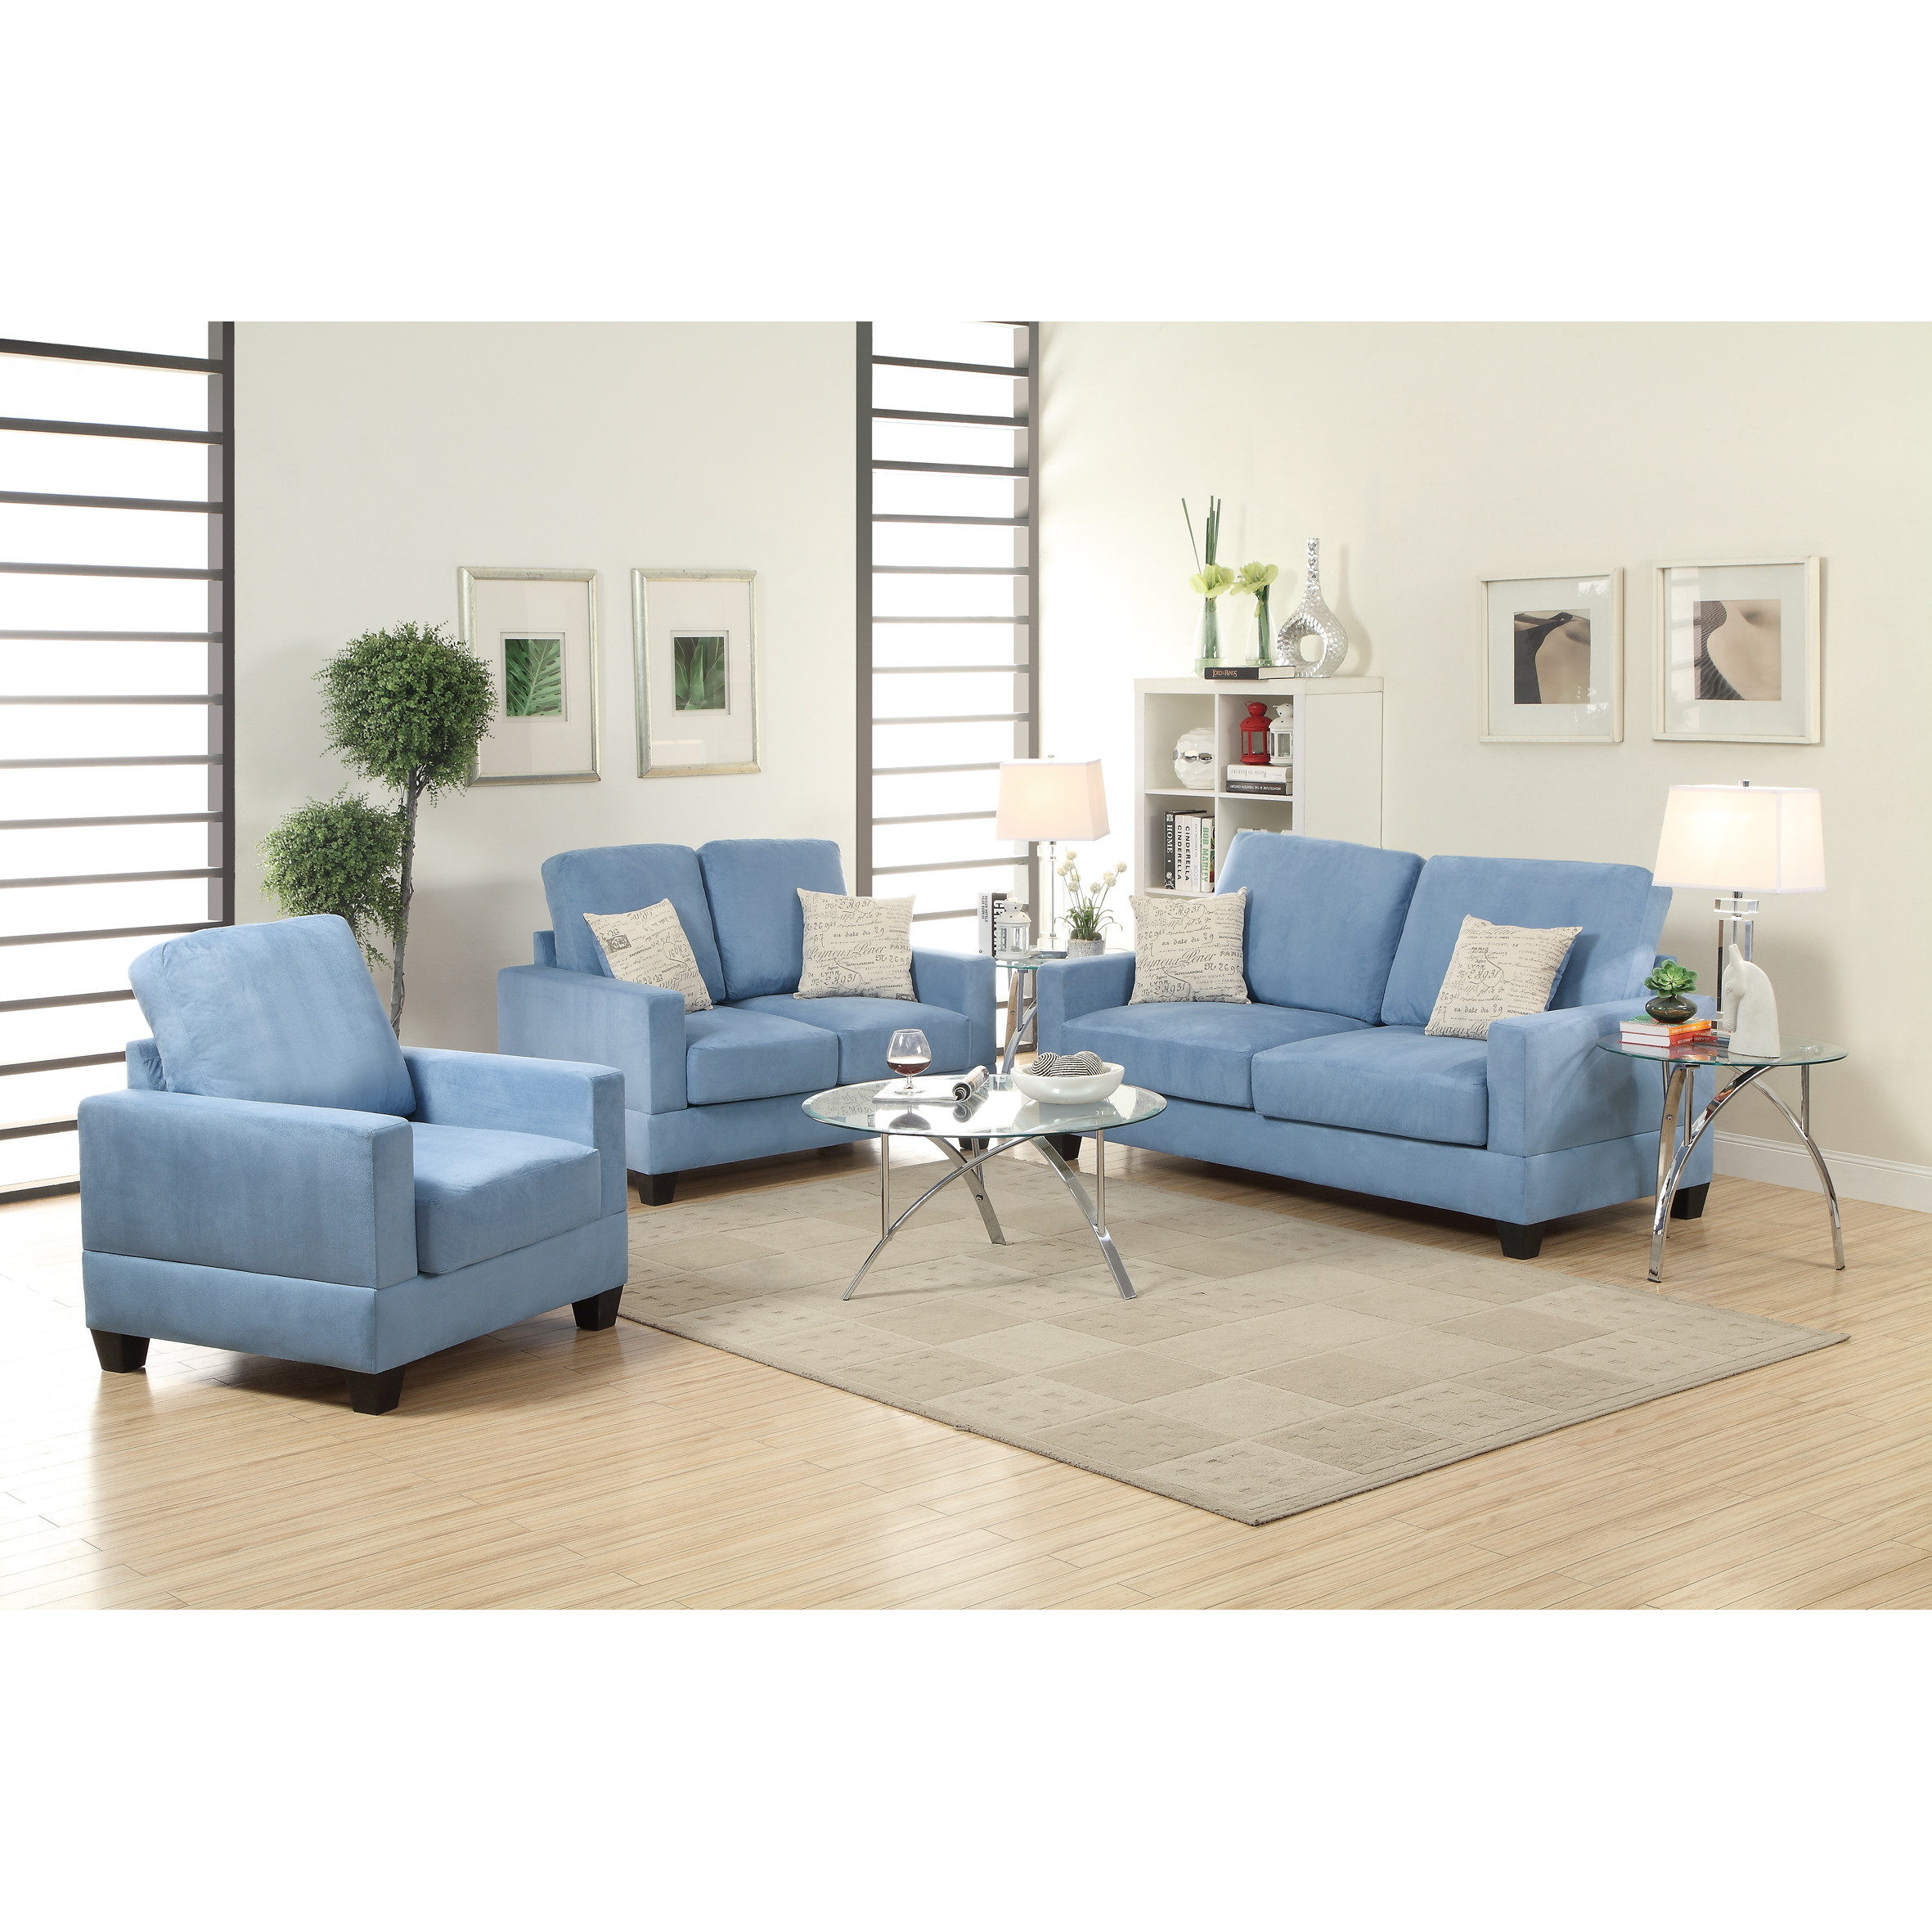 Chic ... Designer Living Room Furniture Sets Euskal ... modern living room furniture sets